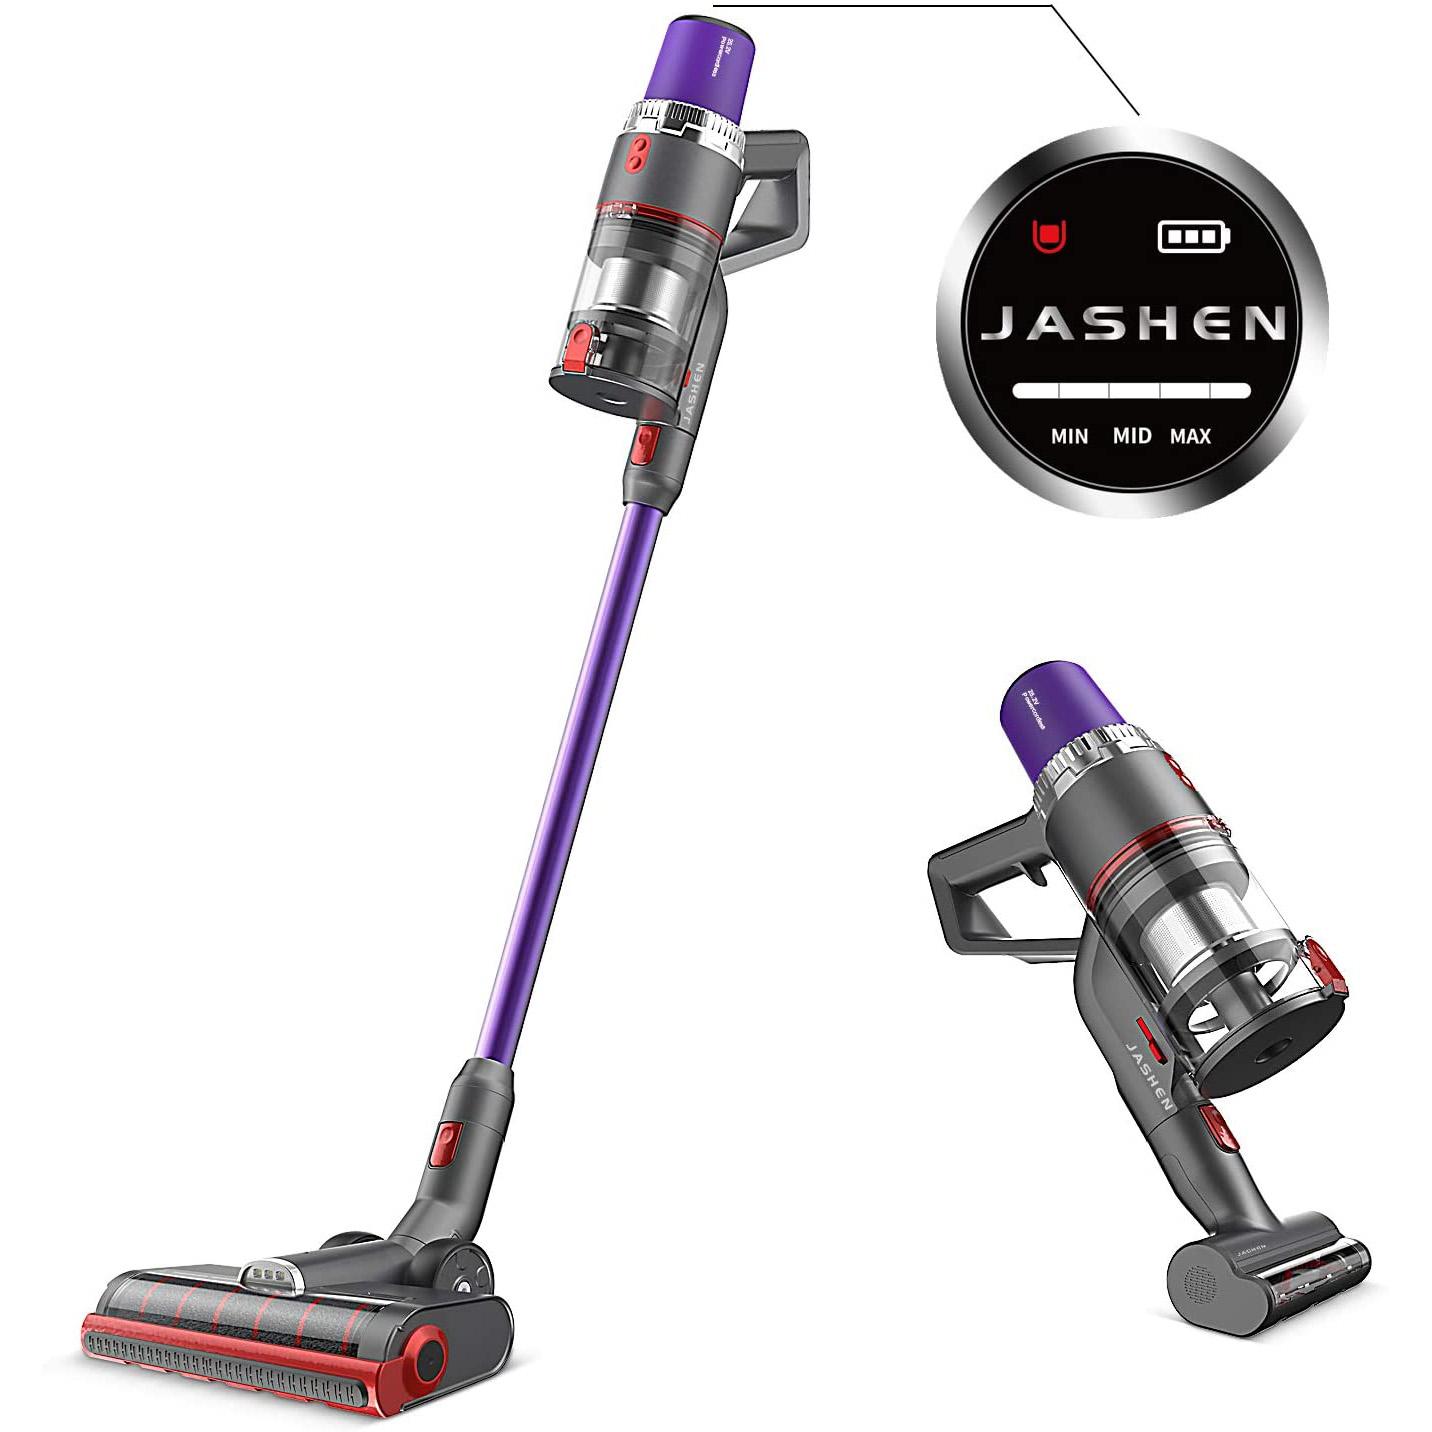 Jashen V16 Cordless Vacuum Cleaner for $135.99 Shipped